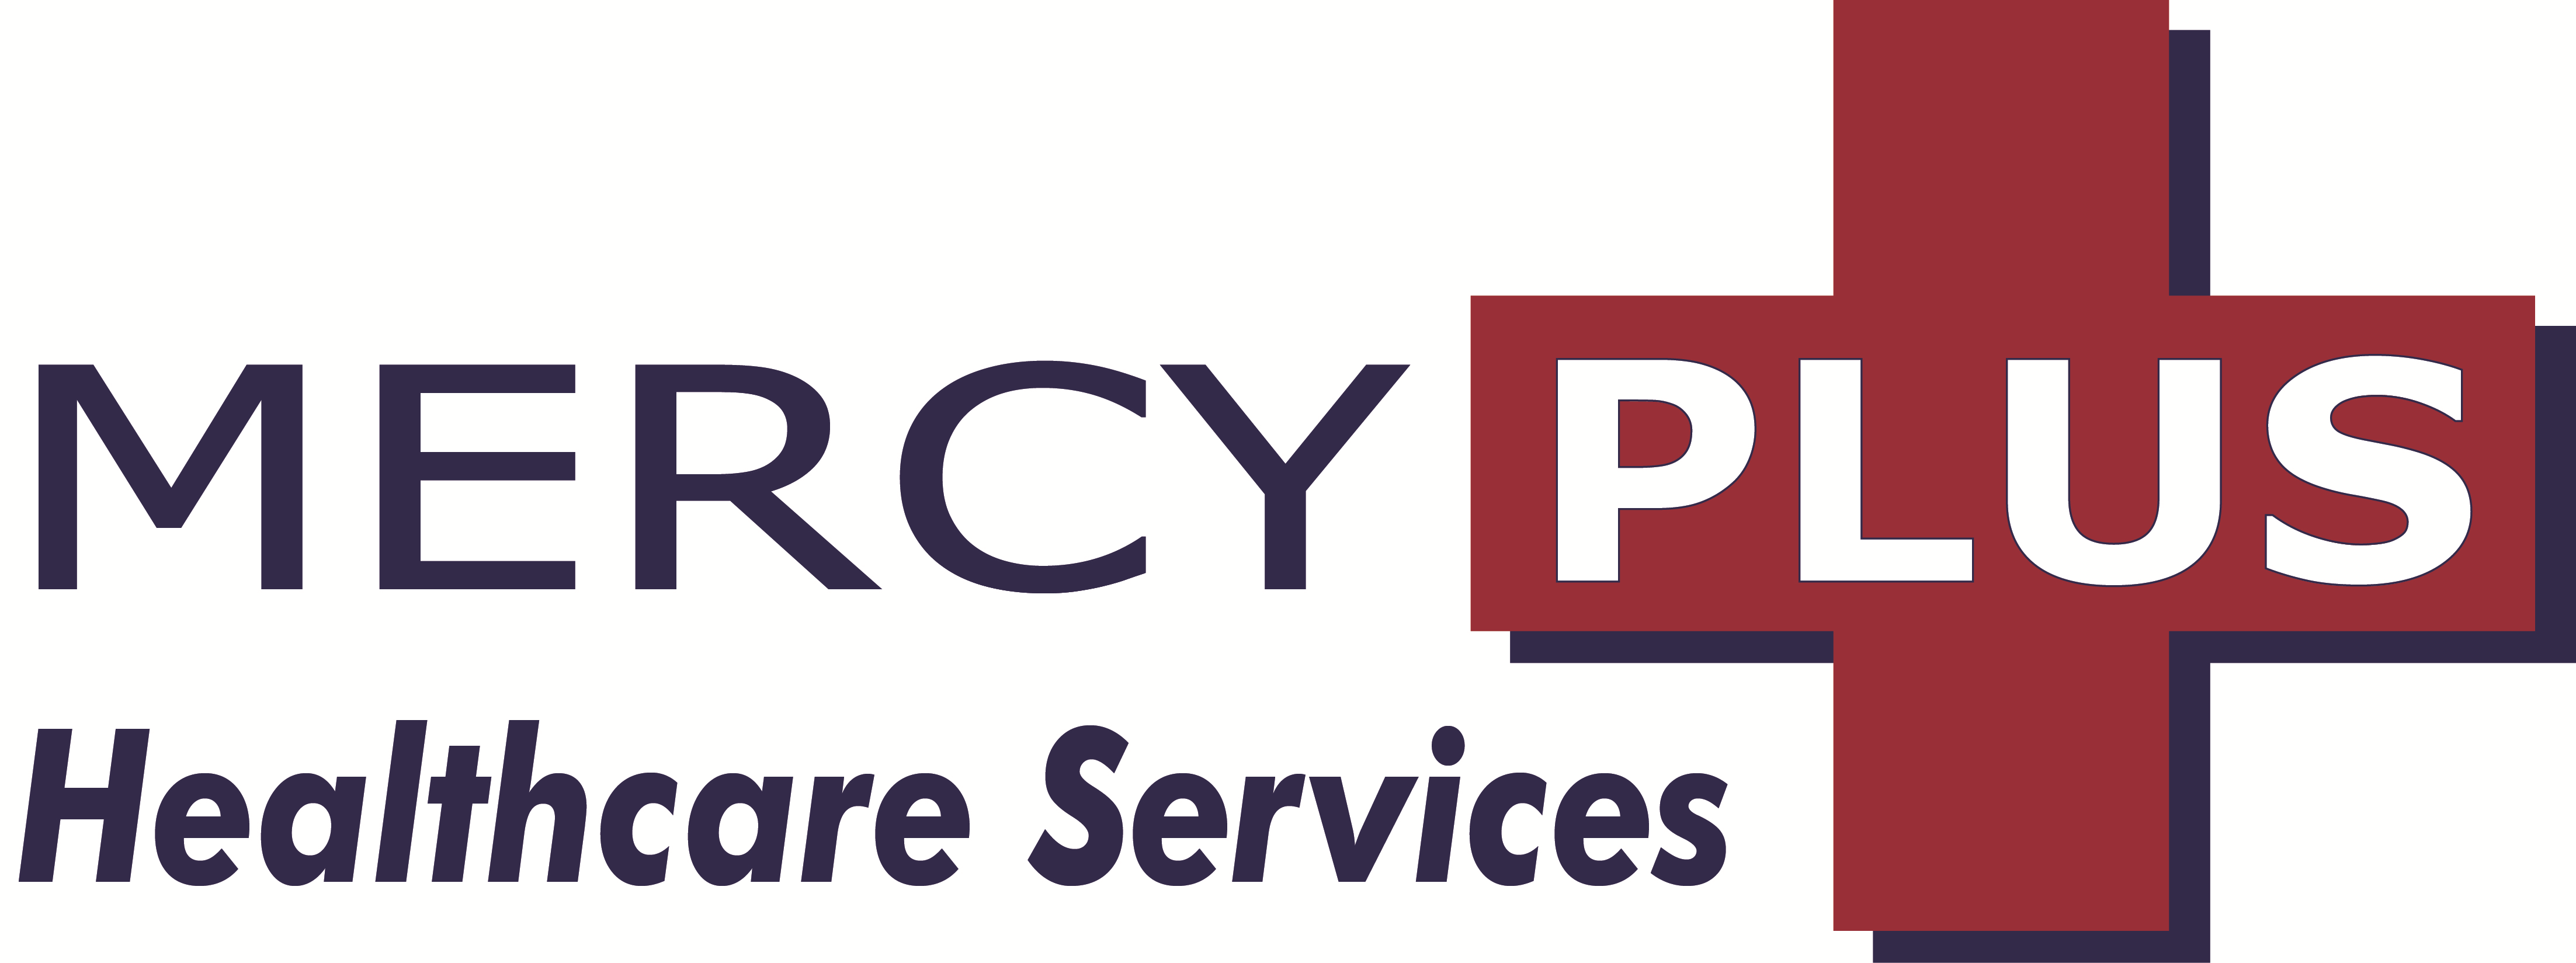 Mercy Plus Healthcare Services logo